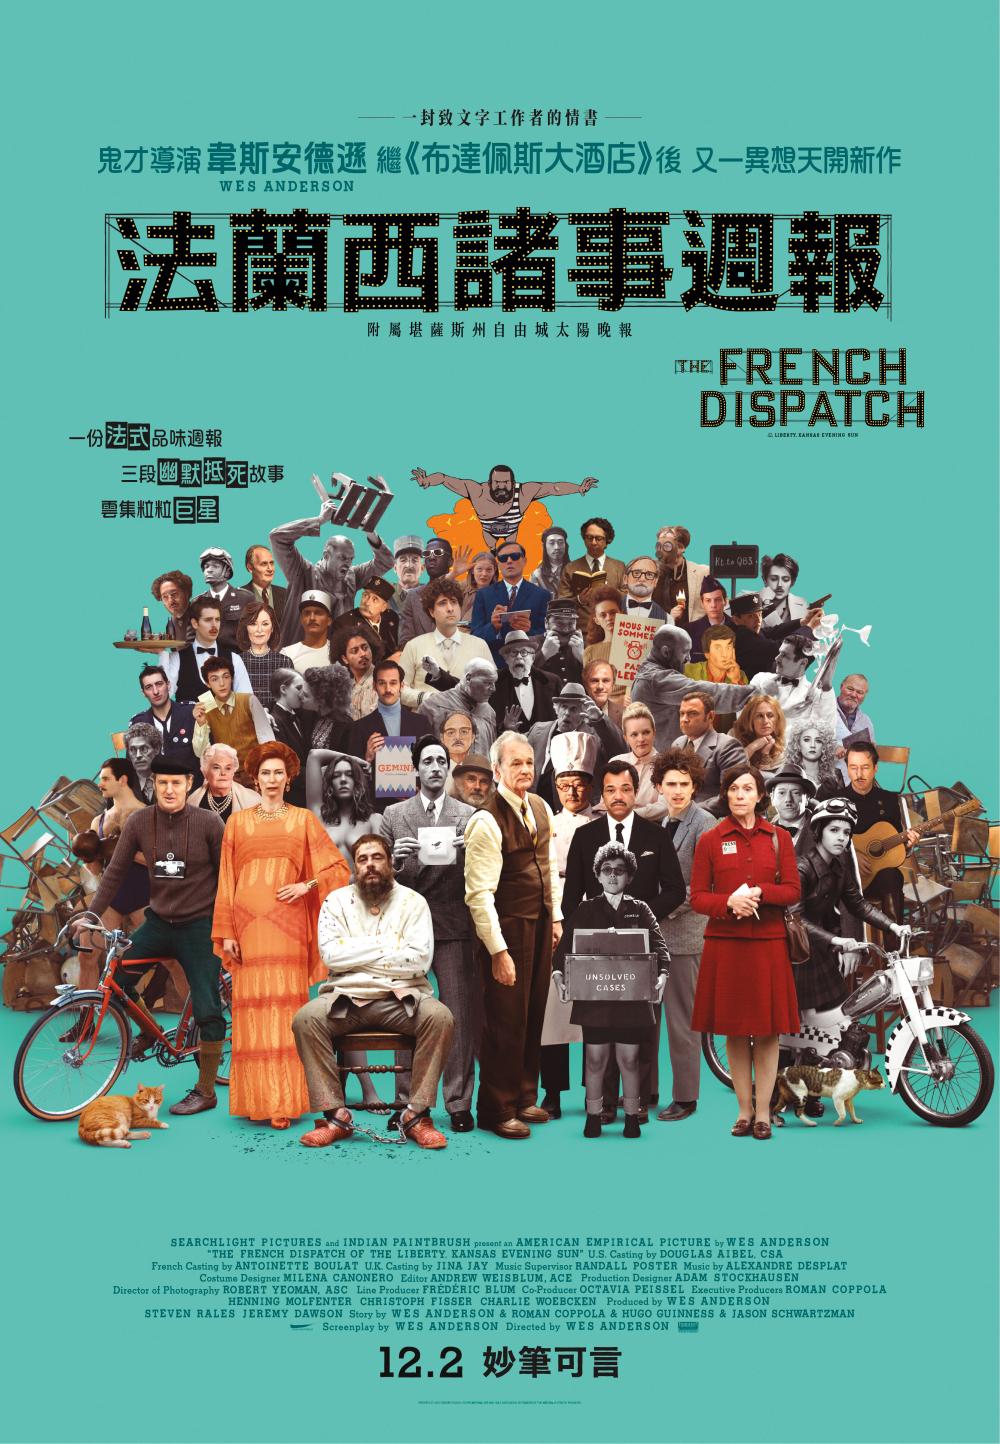 香港版海報